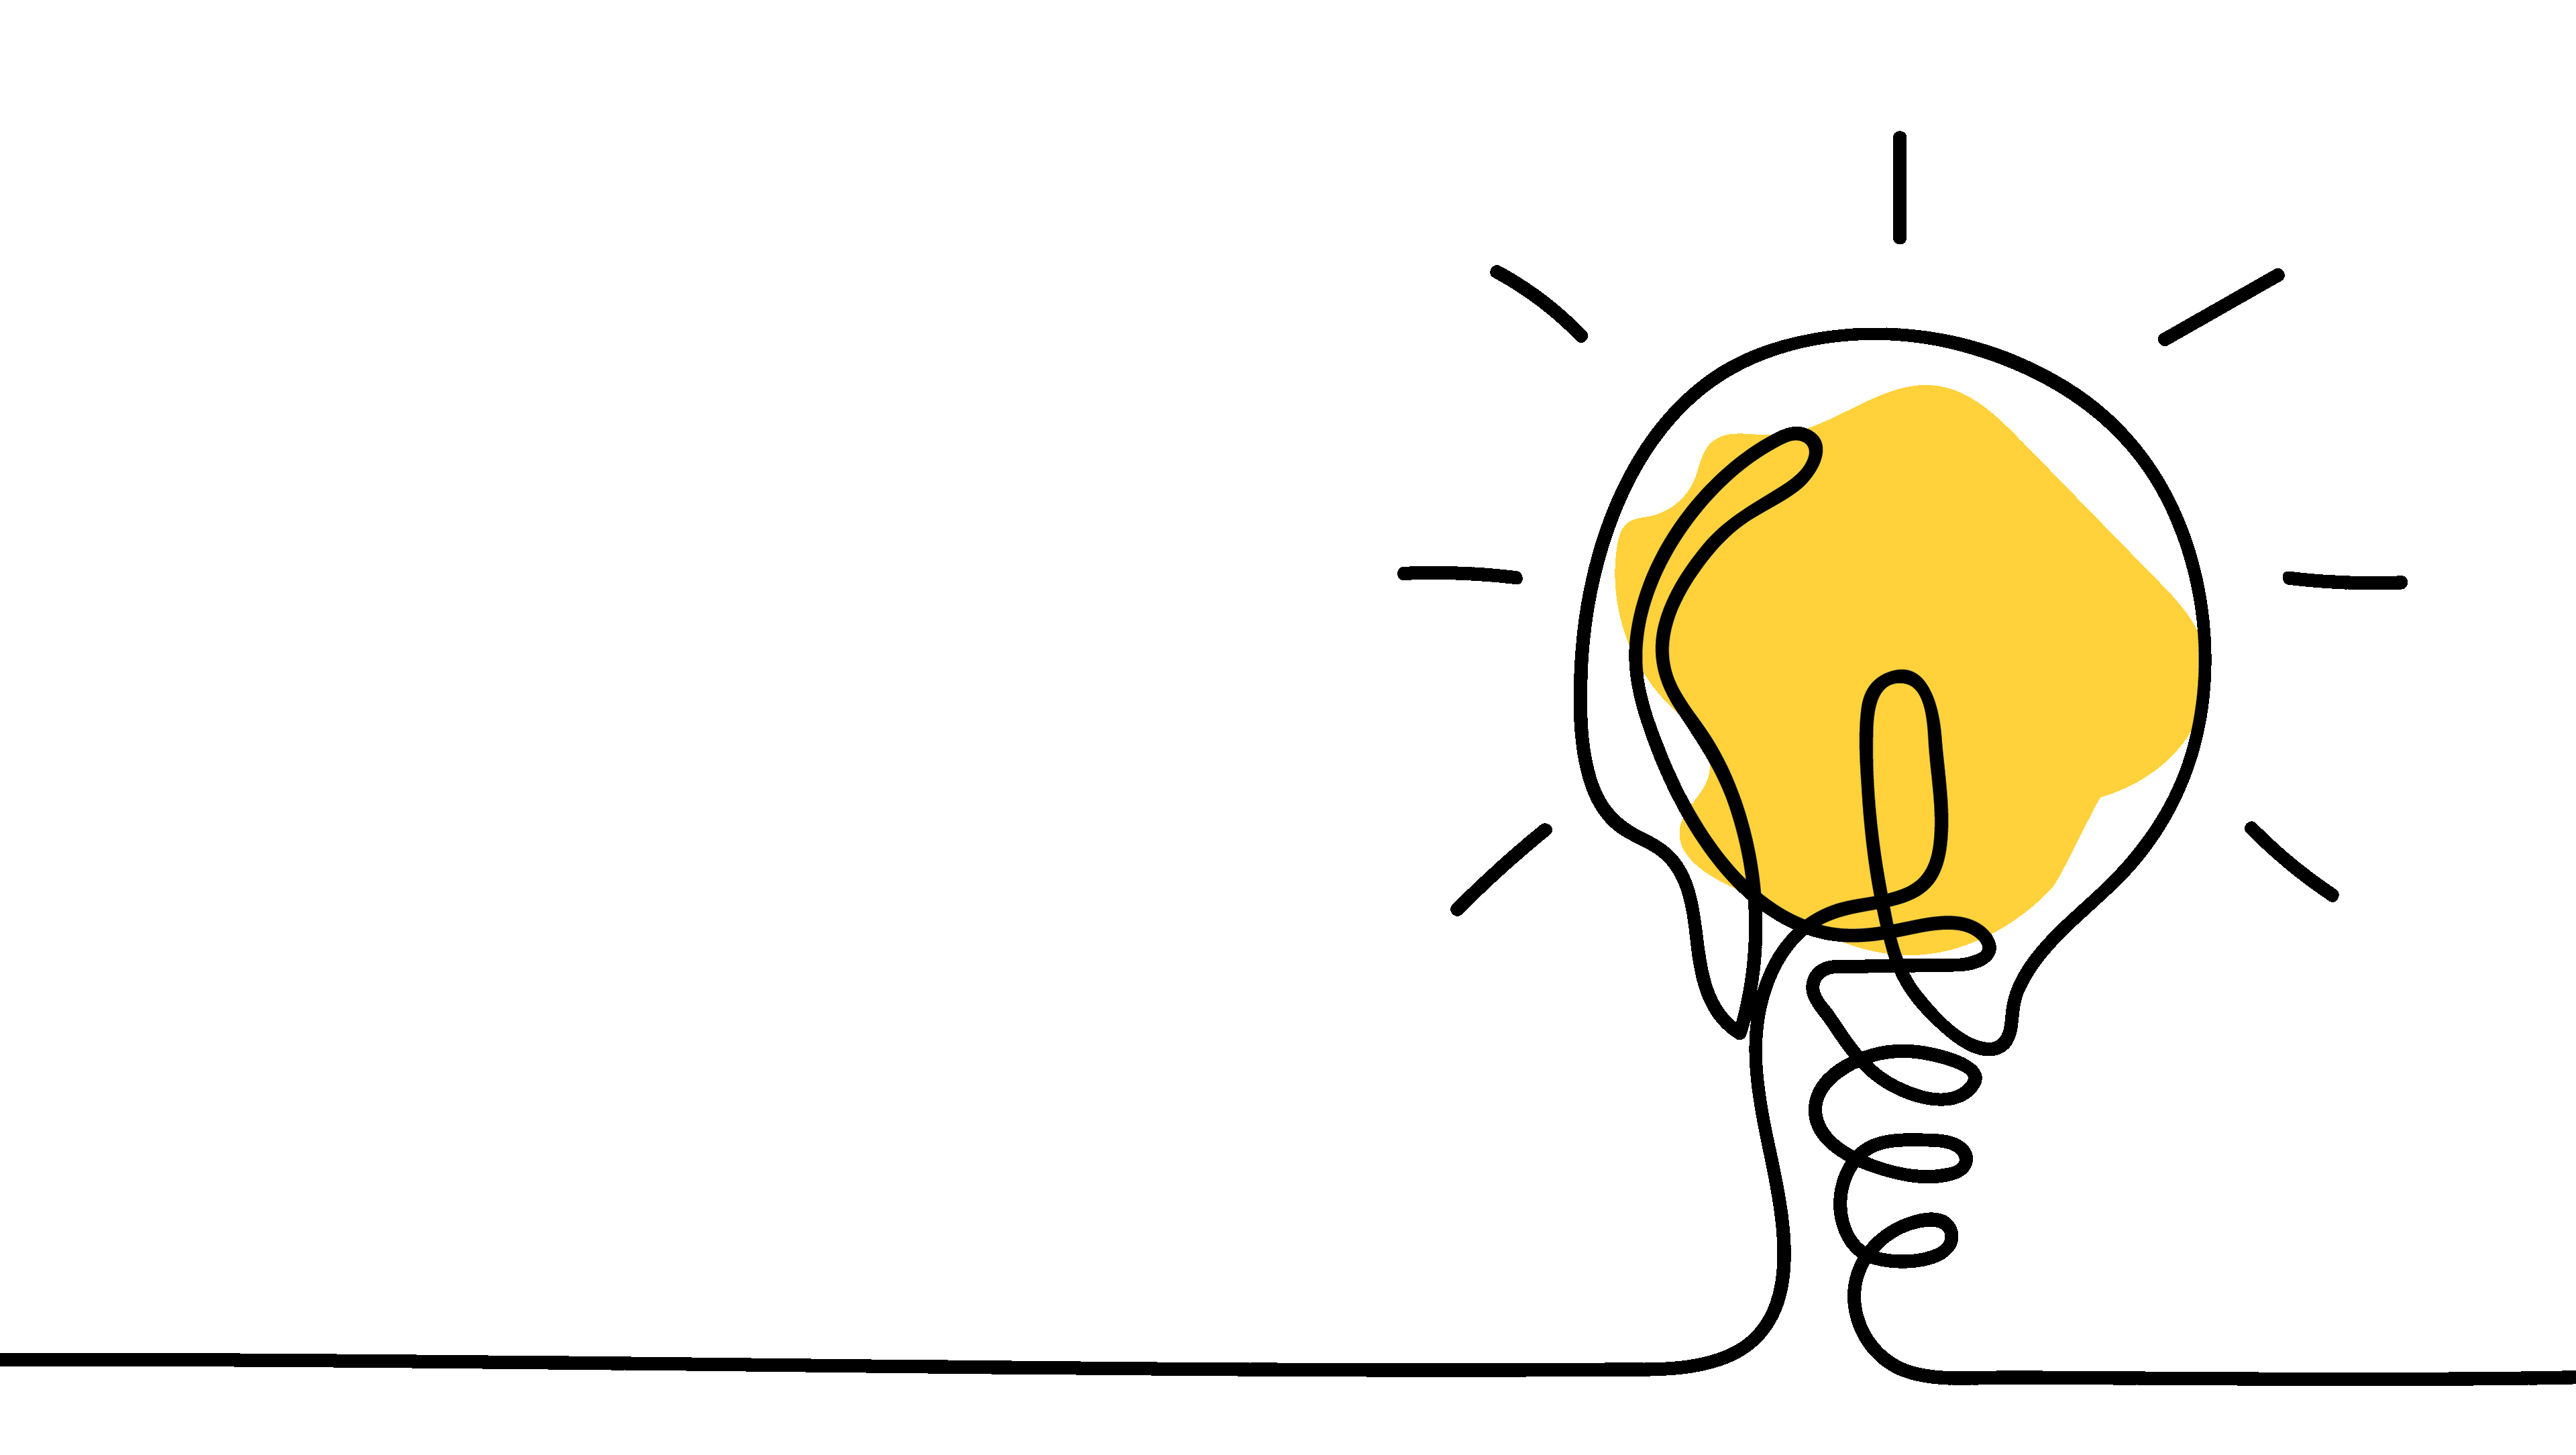 bulb image representing a bright idea